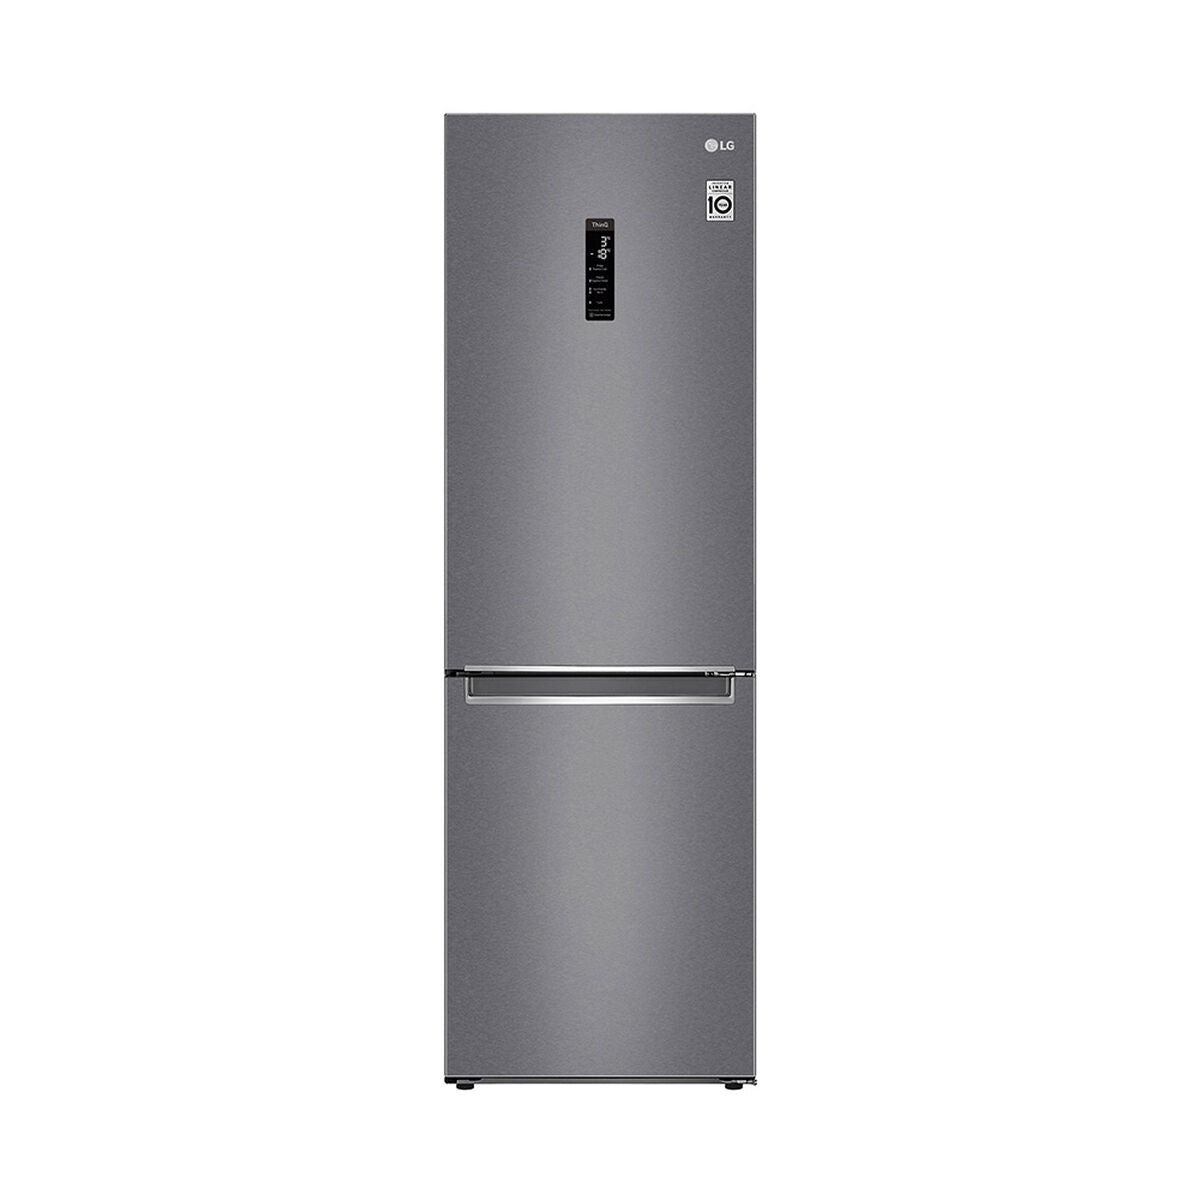 Refrigerador No Frost LG GB37MPD 341 lts.  [Open box] [New]